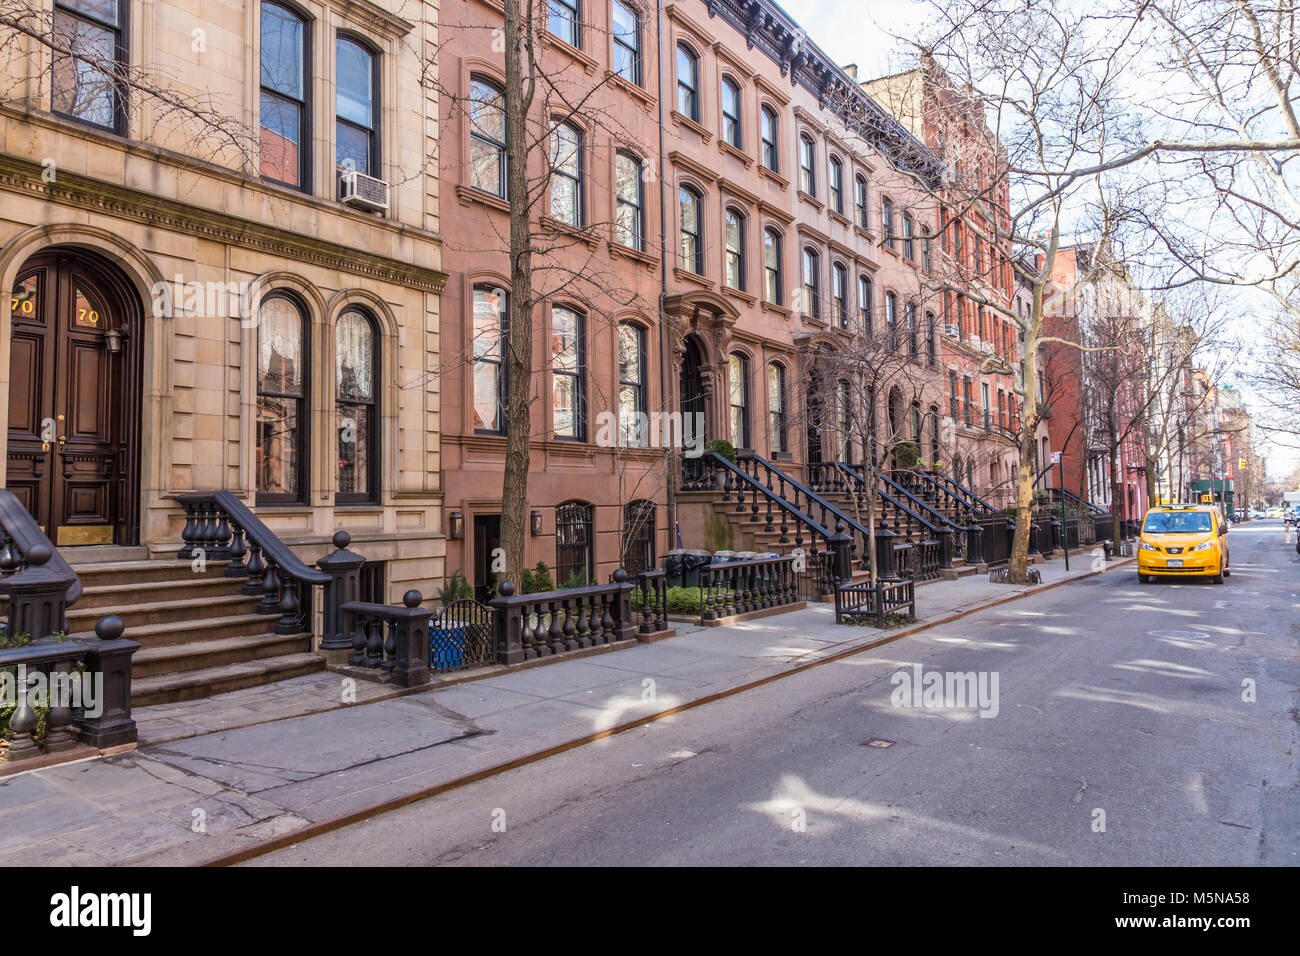 Scenic rue bordée d'édifices historiques de brownstone dans le quartier de West Village à Manhattan, New York City, New York USA Banque D'Images